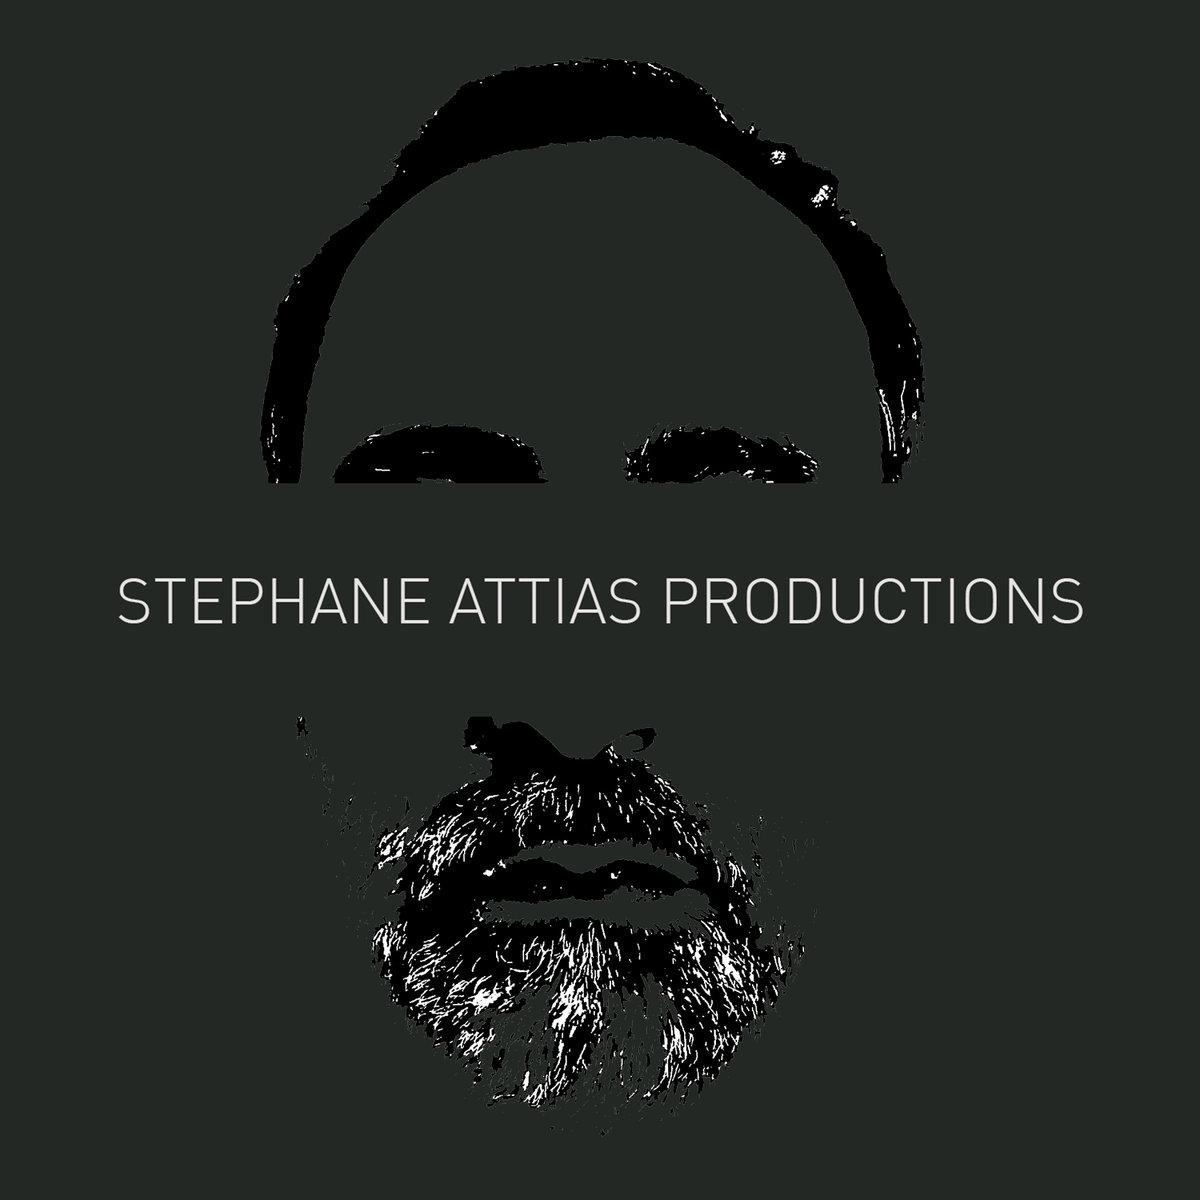 Stephane Attias